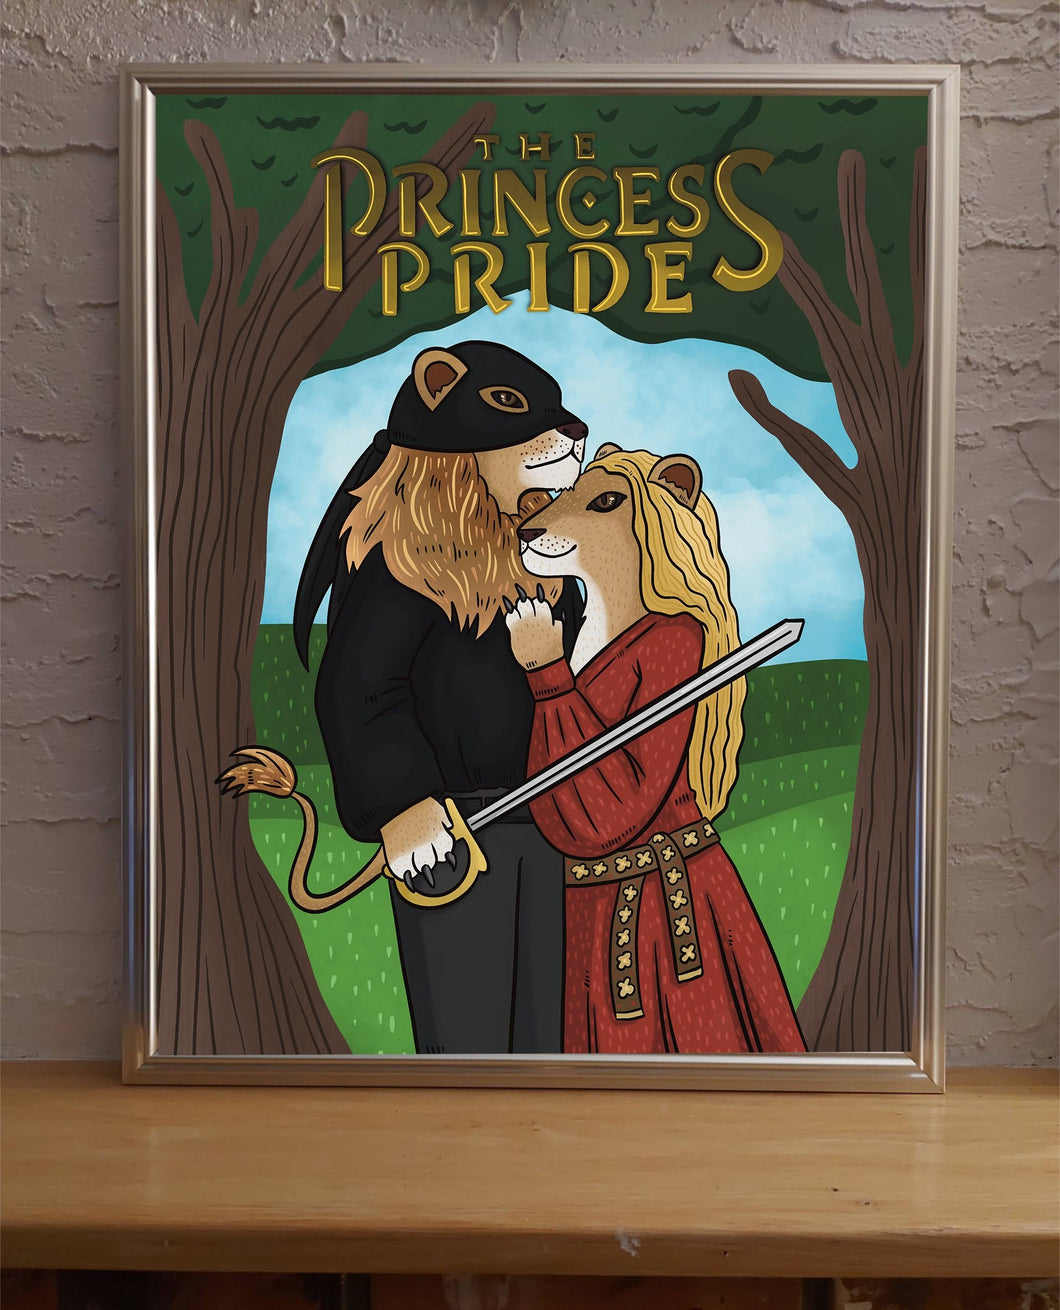 The Princess Pride | Princess Bride Parody